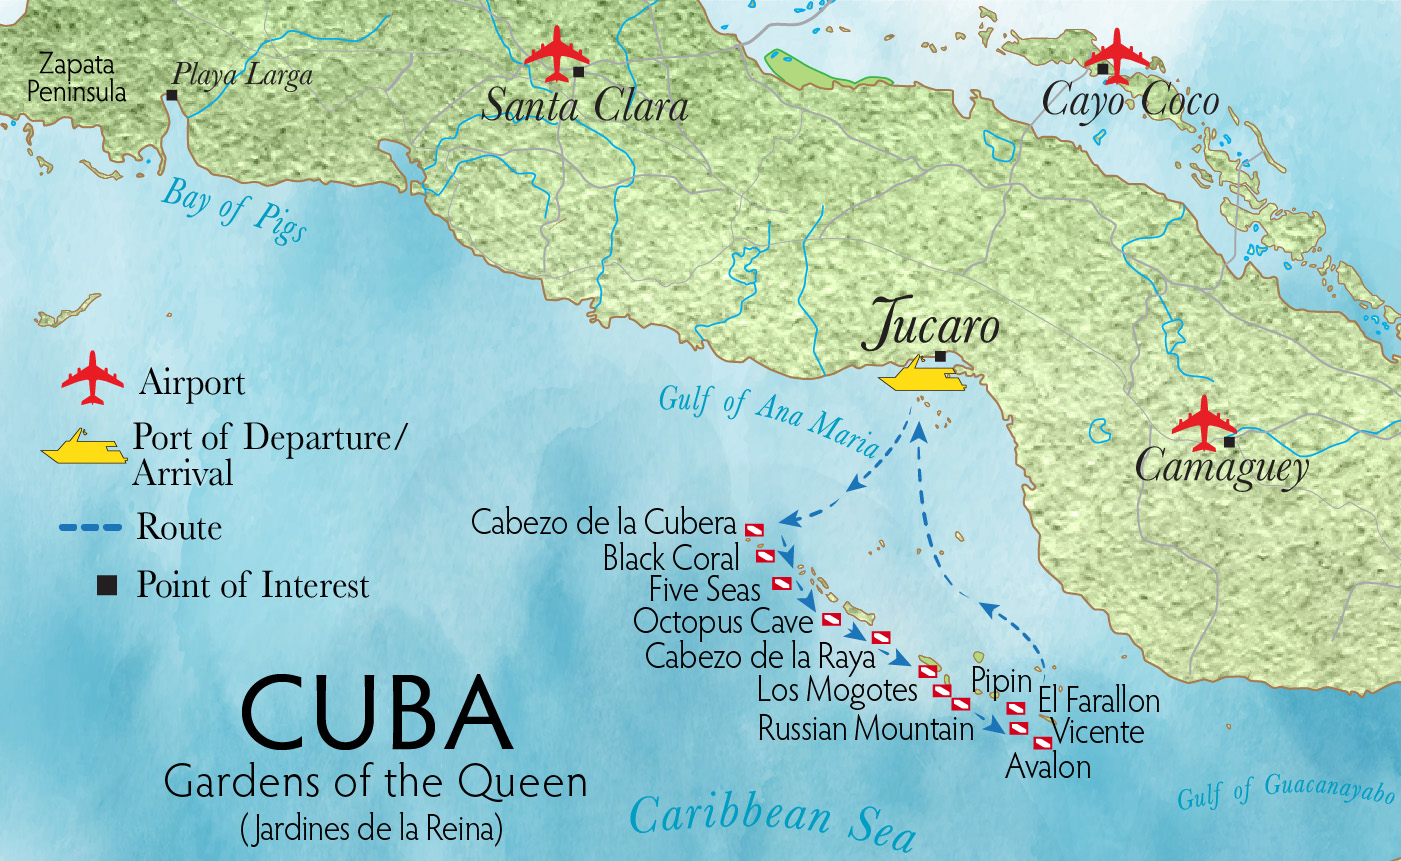 map of Jardines de la Reina, marine park south of Cuba in the Caribbean